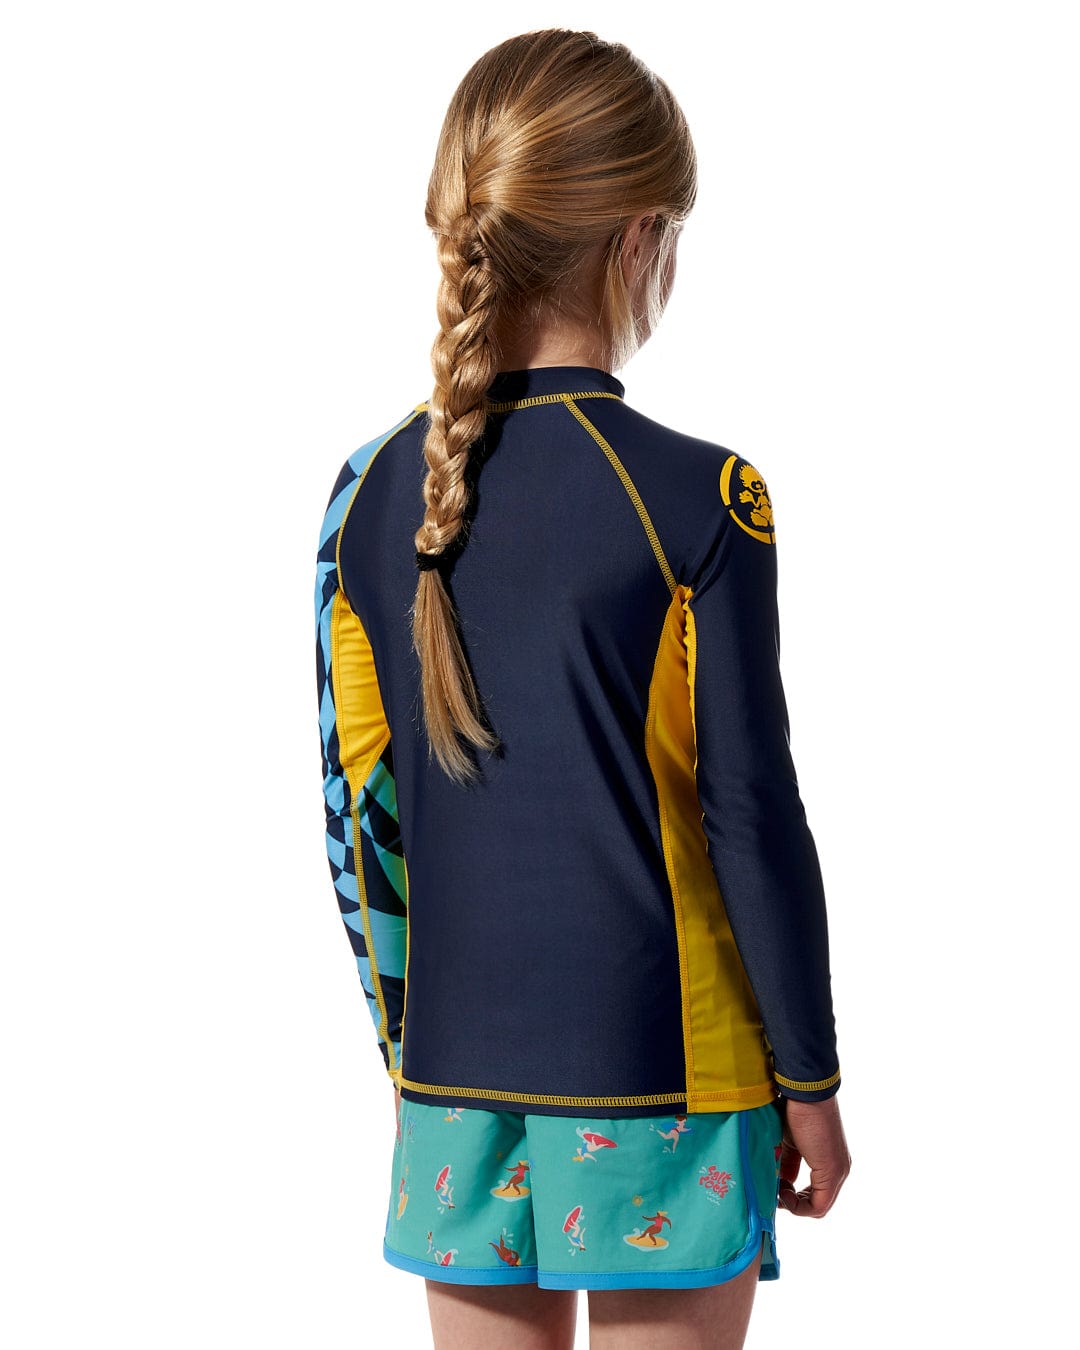 The back view of a girl wearing a Saltrock Warp - Kids Long Sleeve Rash Vest - Blue.